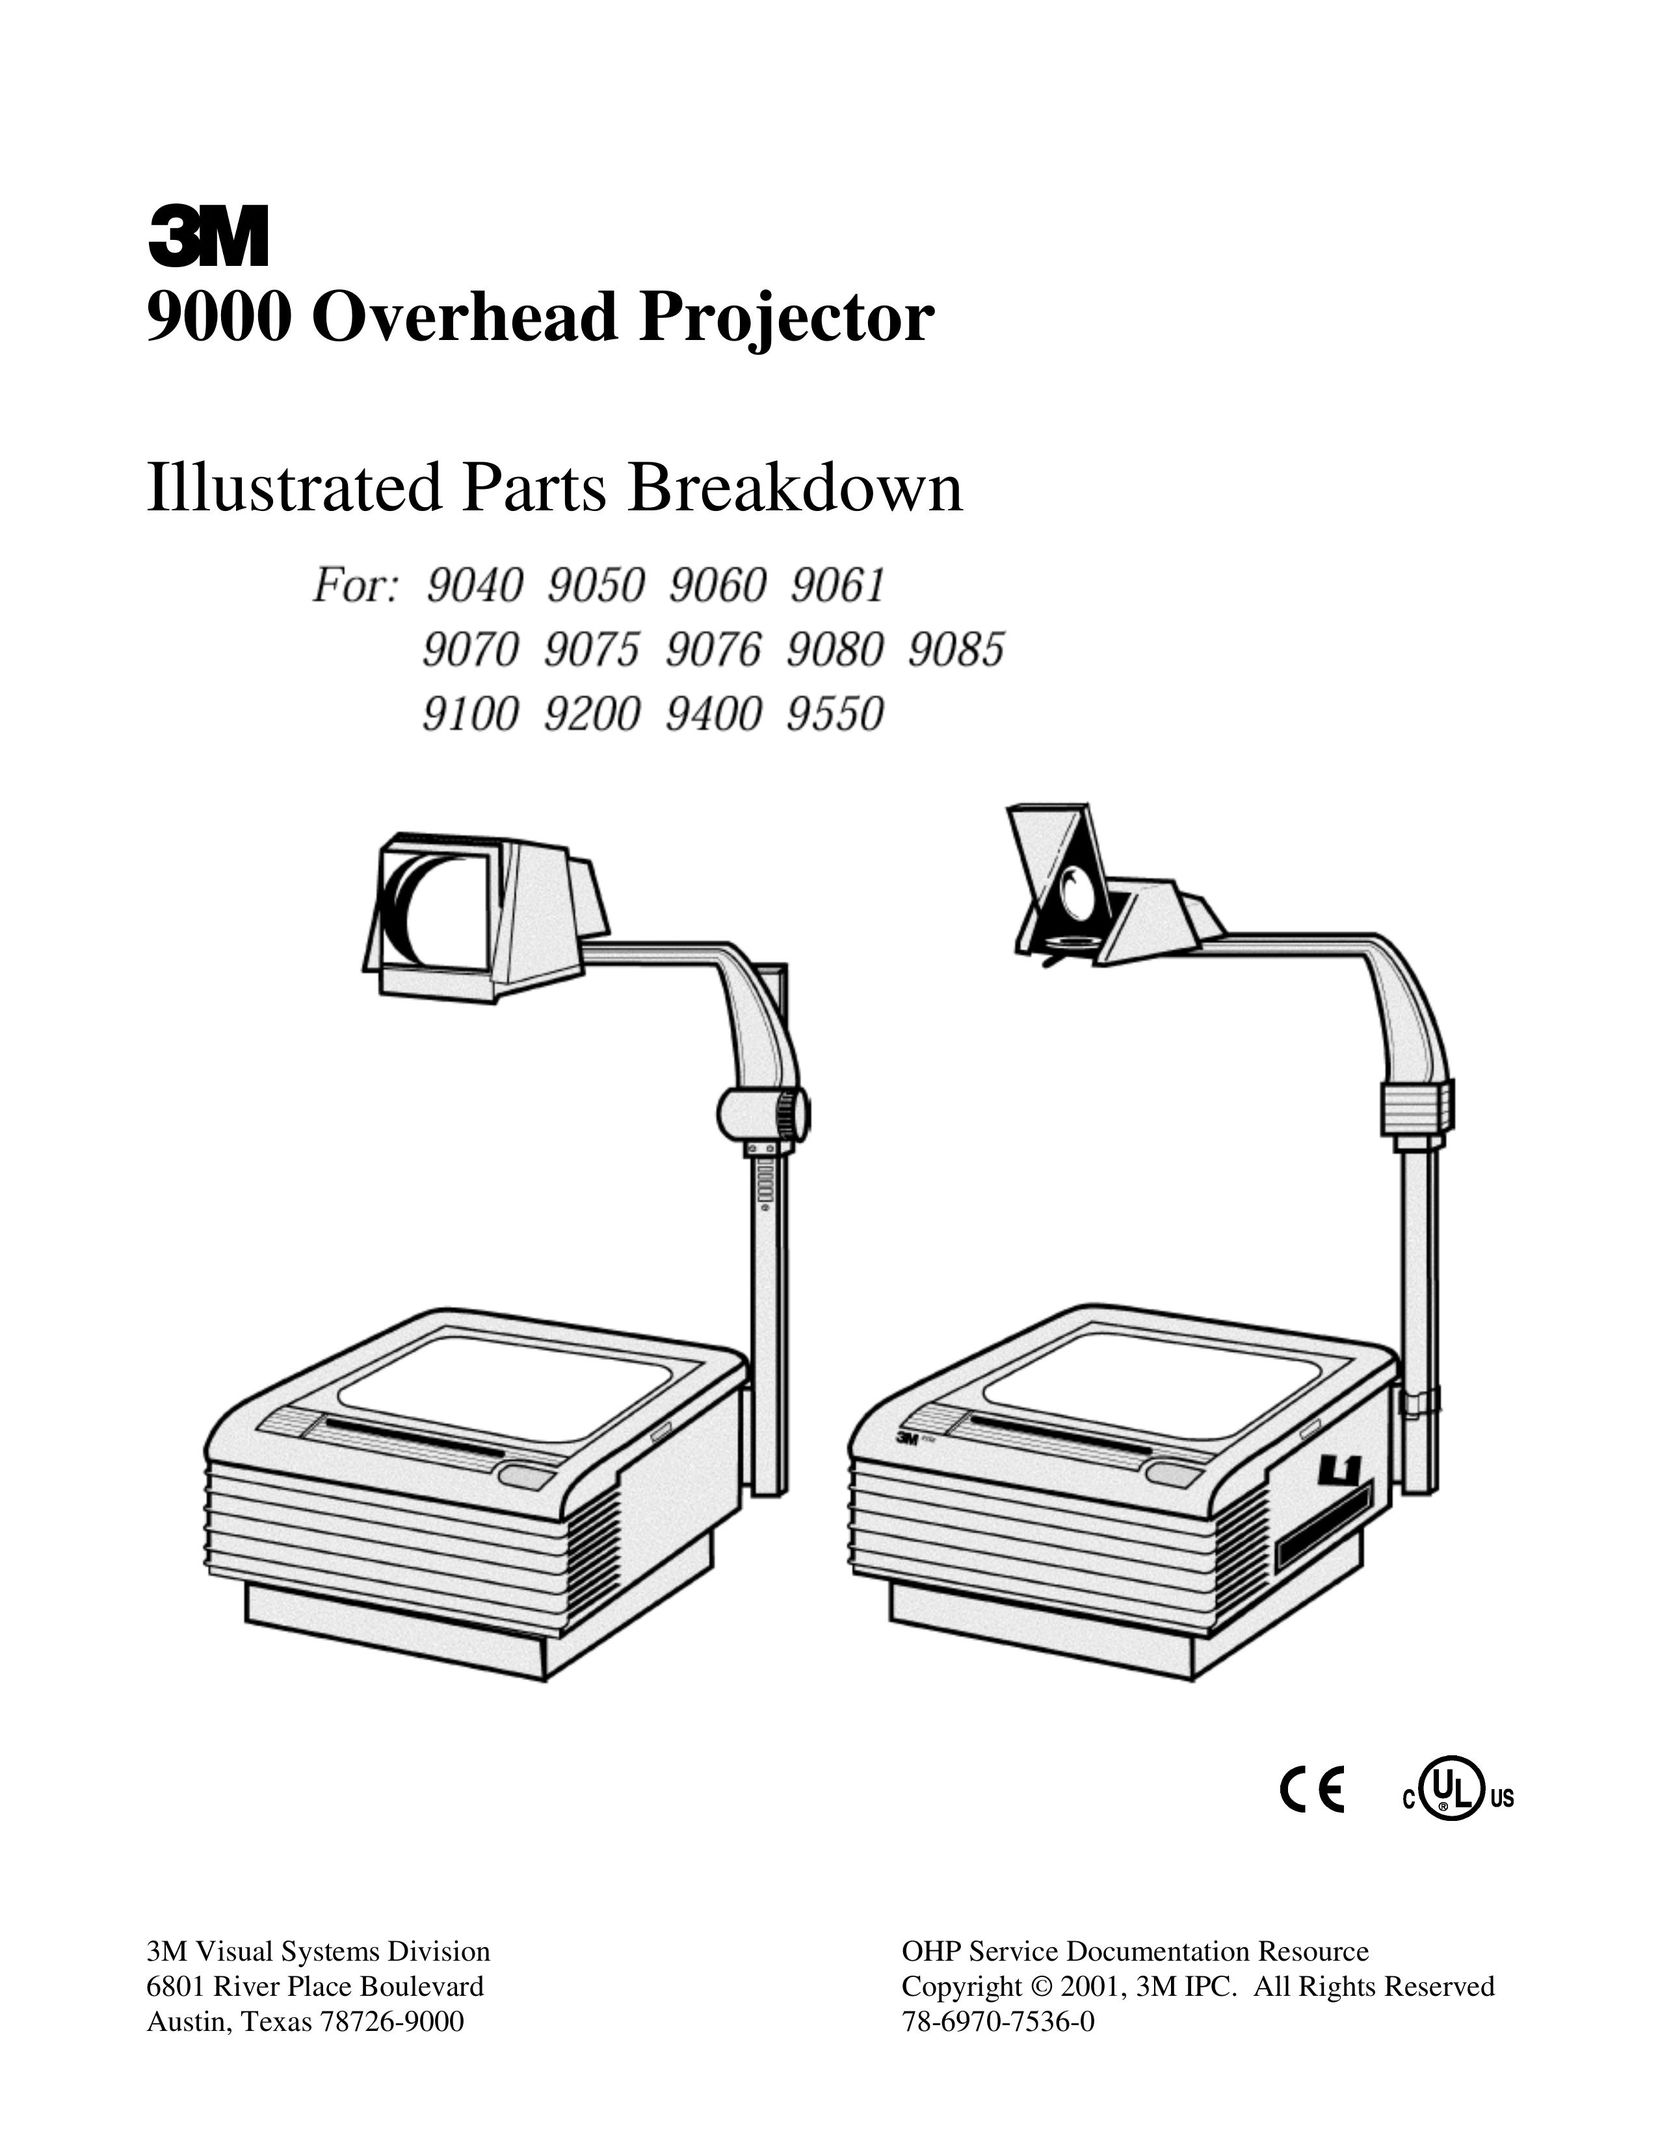 Xerox 9070 Projector User Manual